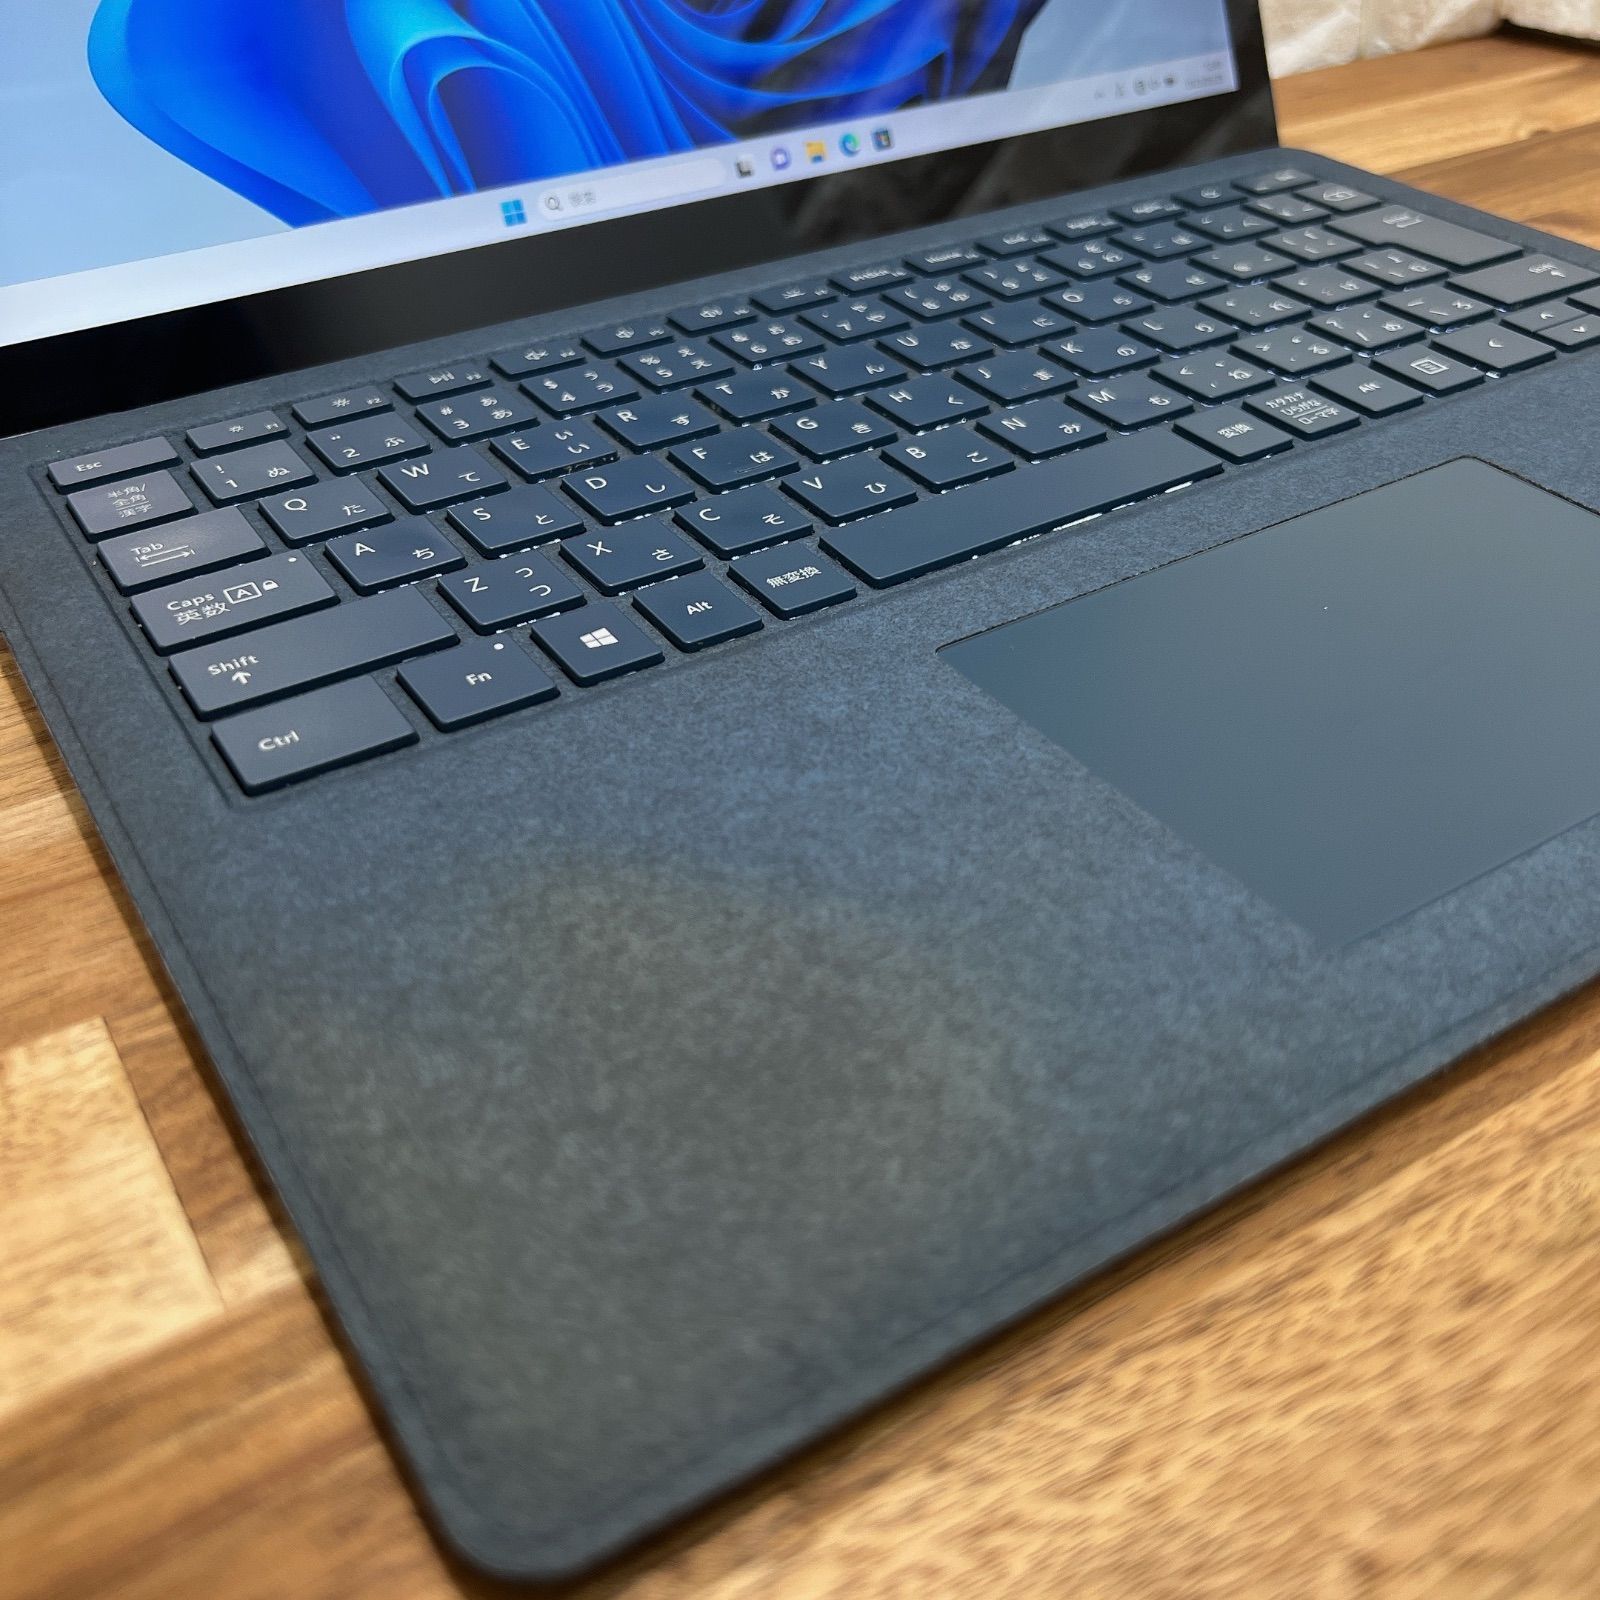 Surface laptop 2 ブルー☘SSD256GB☘Corei5第8世代 - ほんぽくんのPC